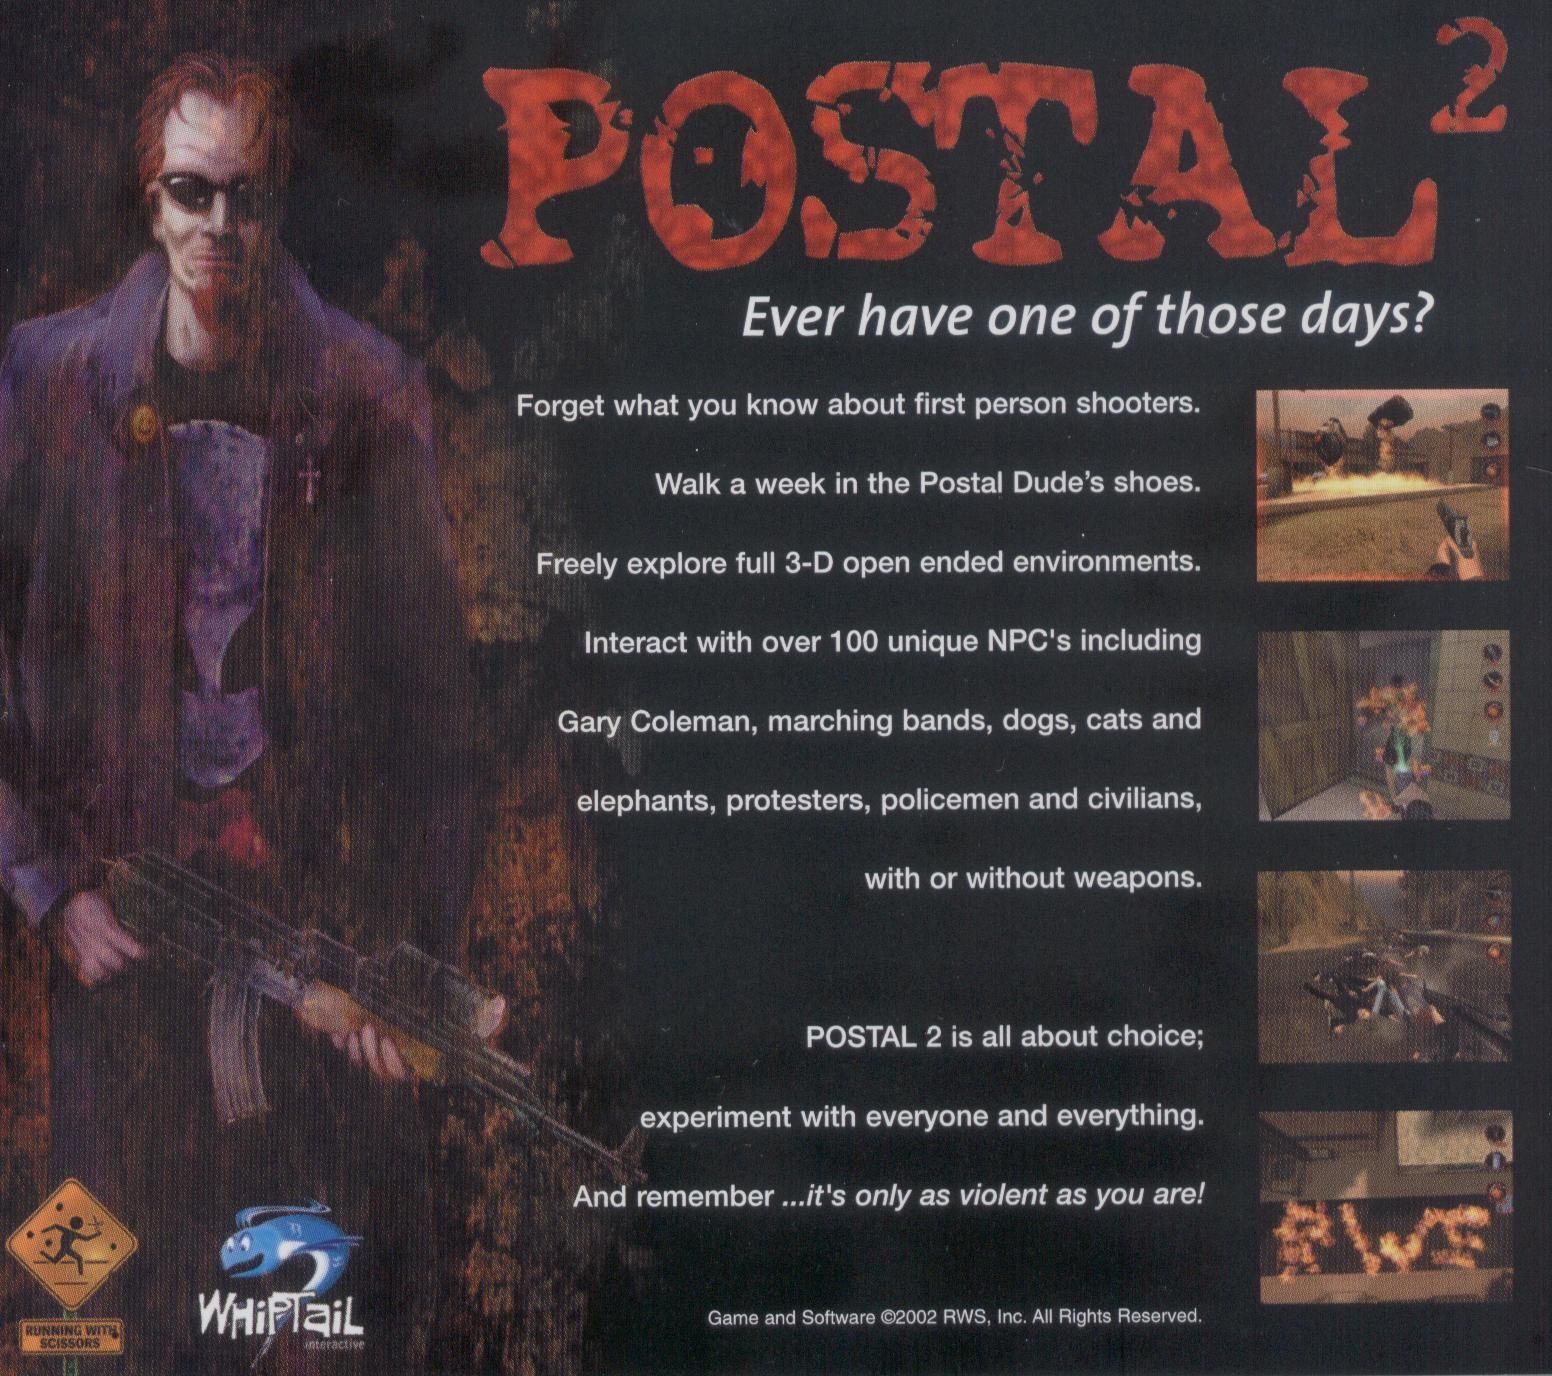 скачать игру postal 2 awp delete review 2 через торрент фото 46